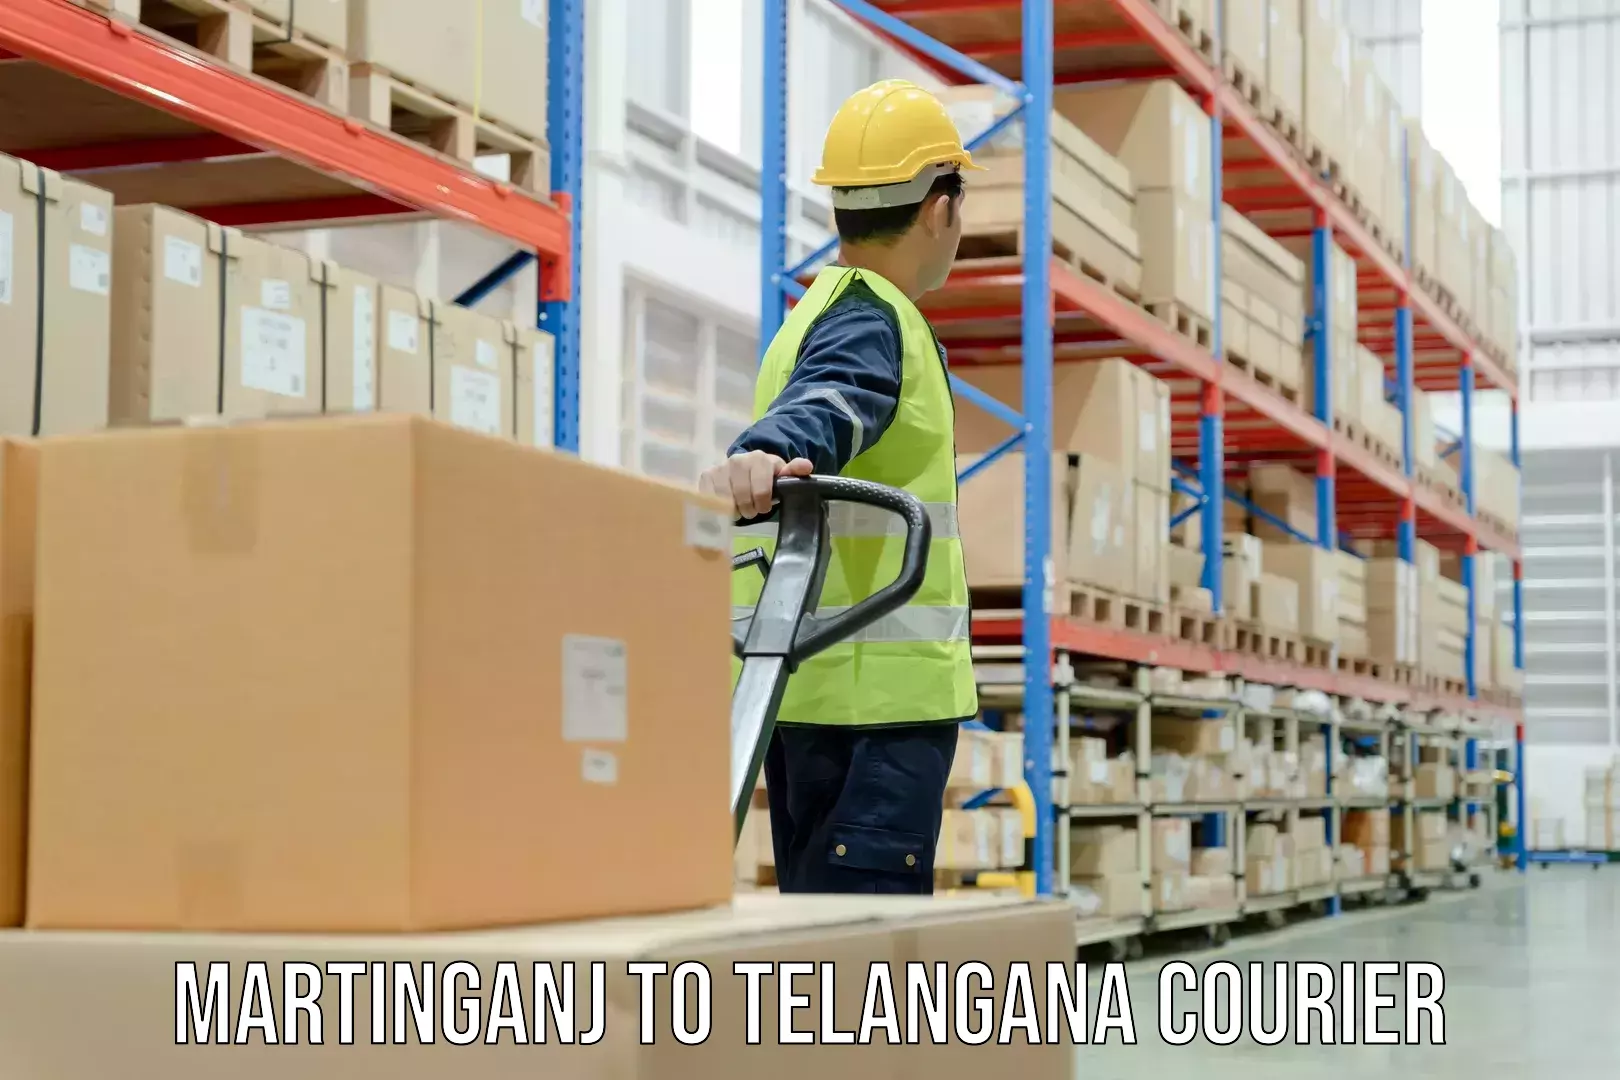 Efficient shipping operations Martinganj to Nizamabad